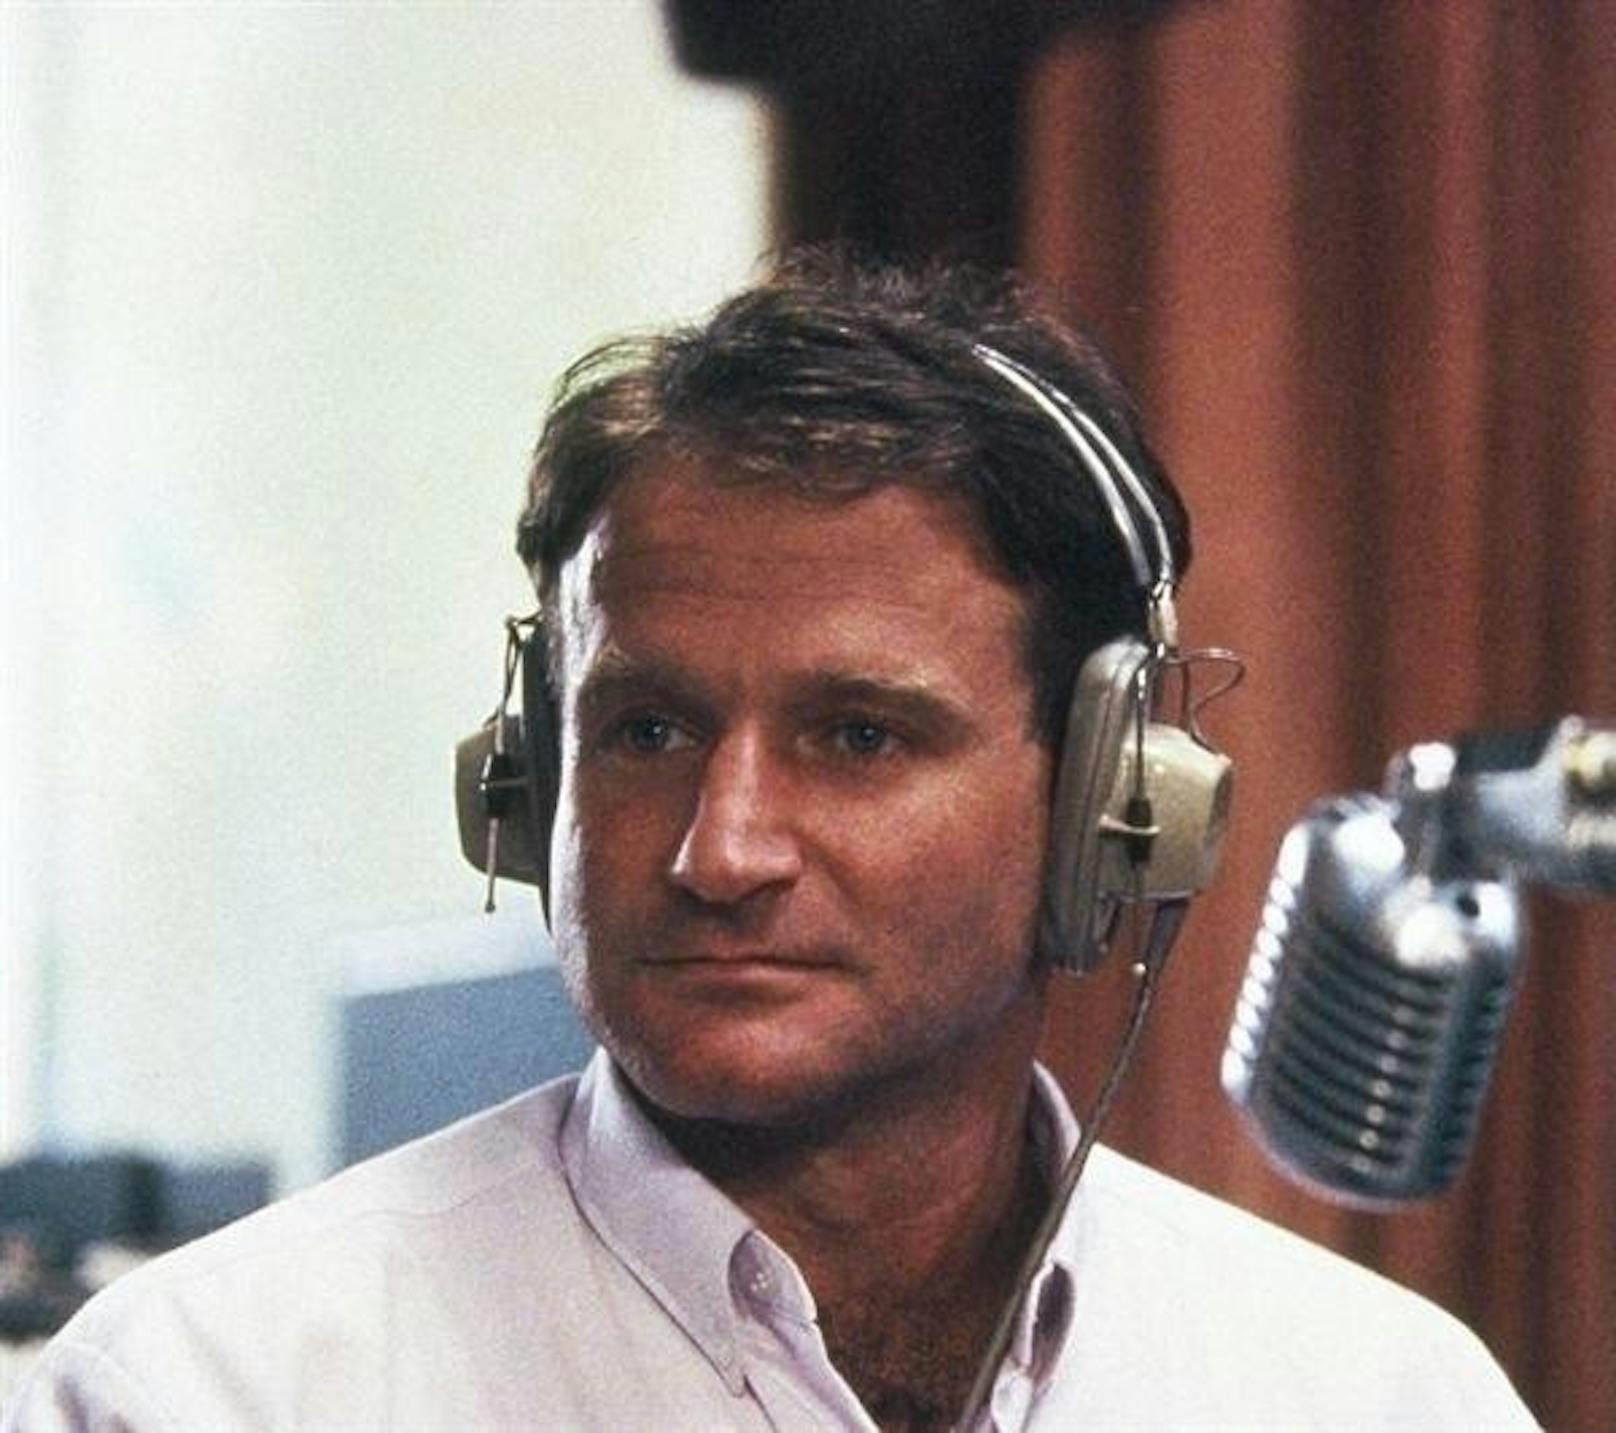 Robin Williams in "Good Morning, Vietnam" (1987)